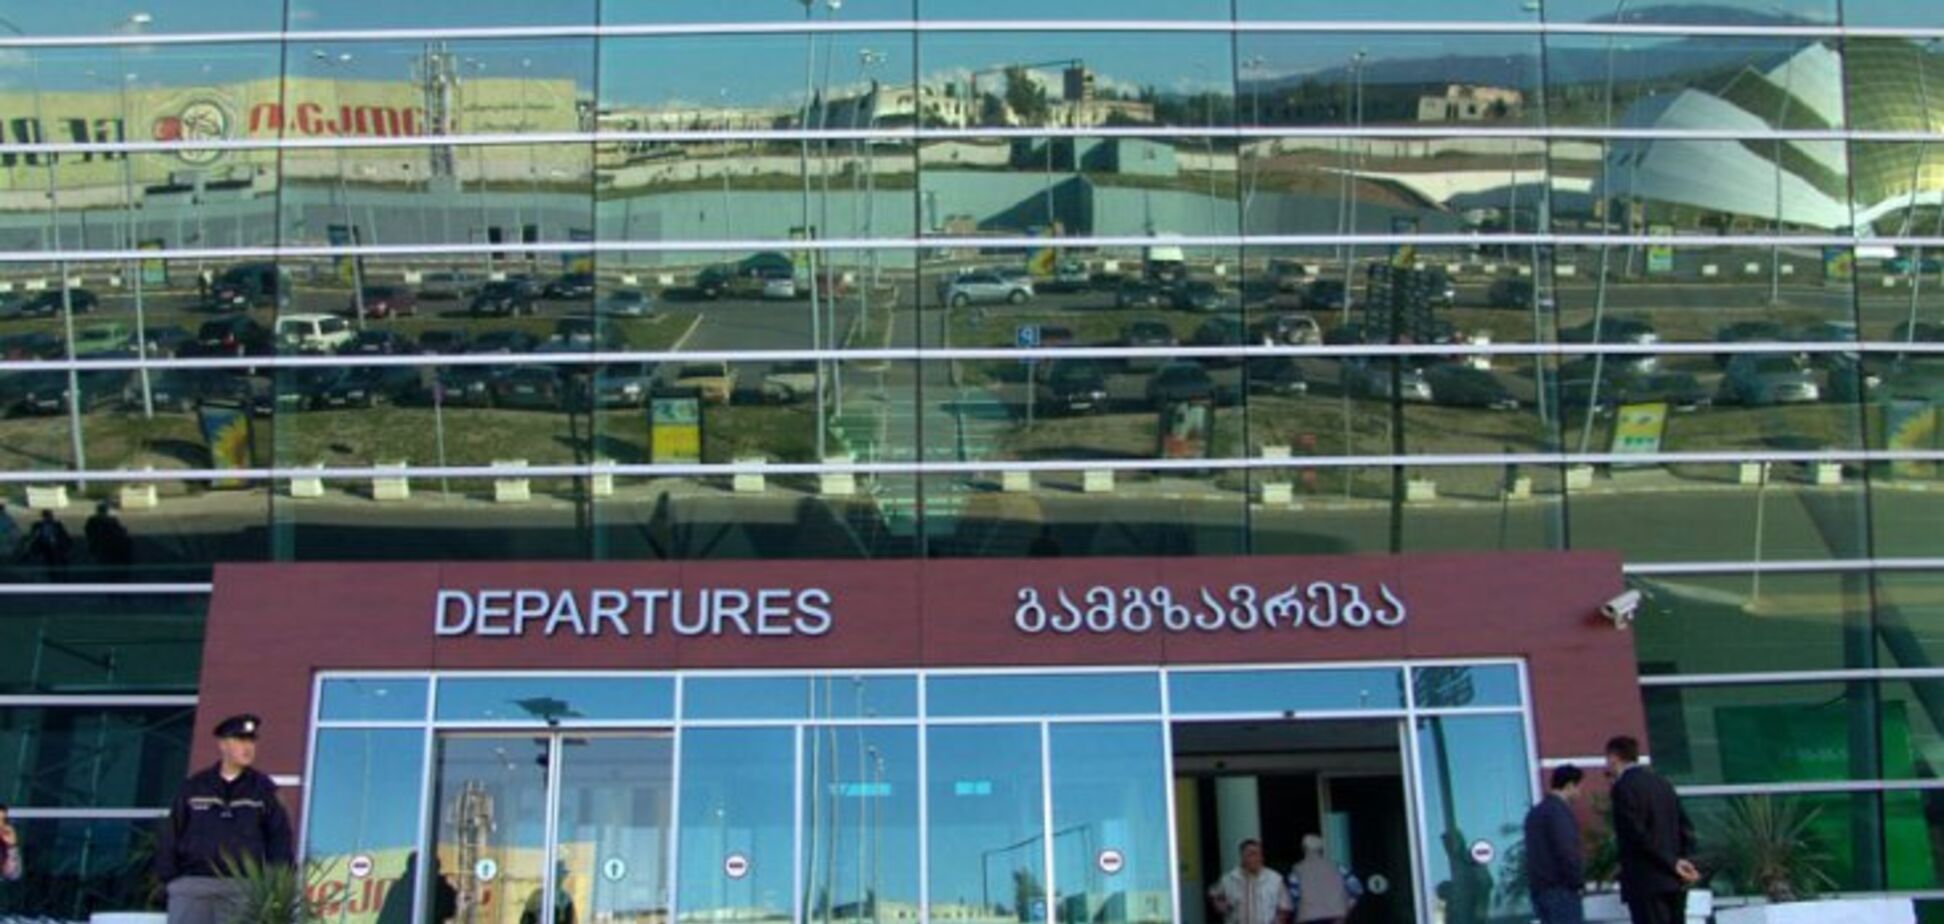 ЧП в аэропорту Тбилиси: россиянин отравил 7 человек неизвестным веществом